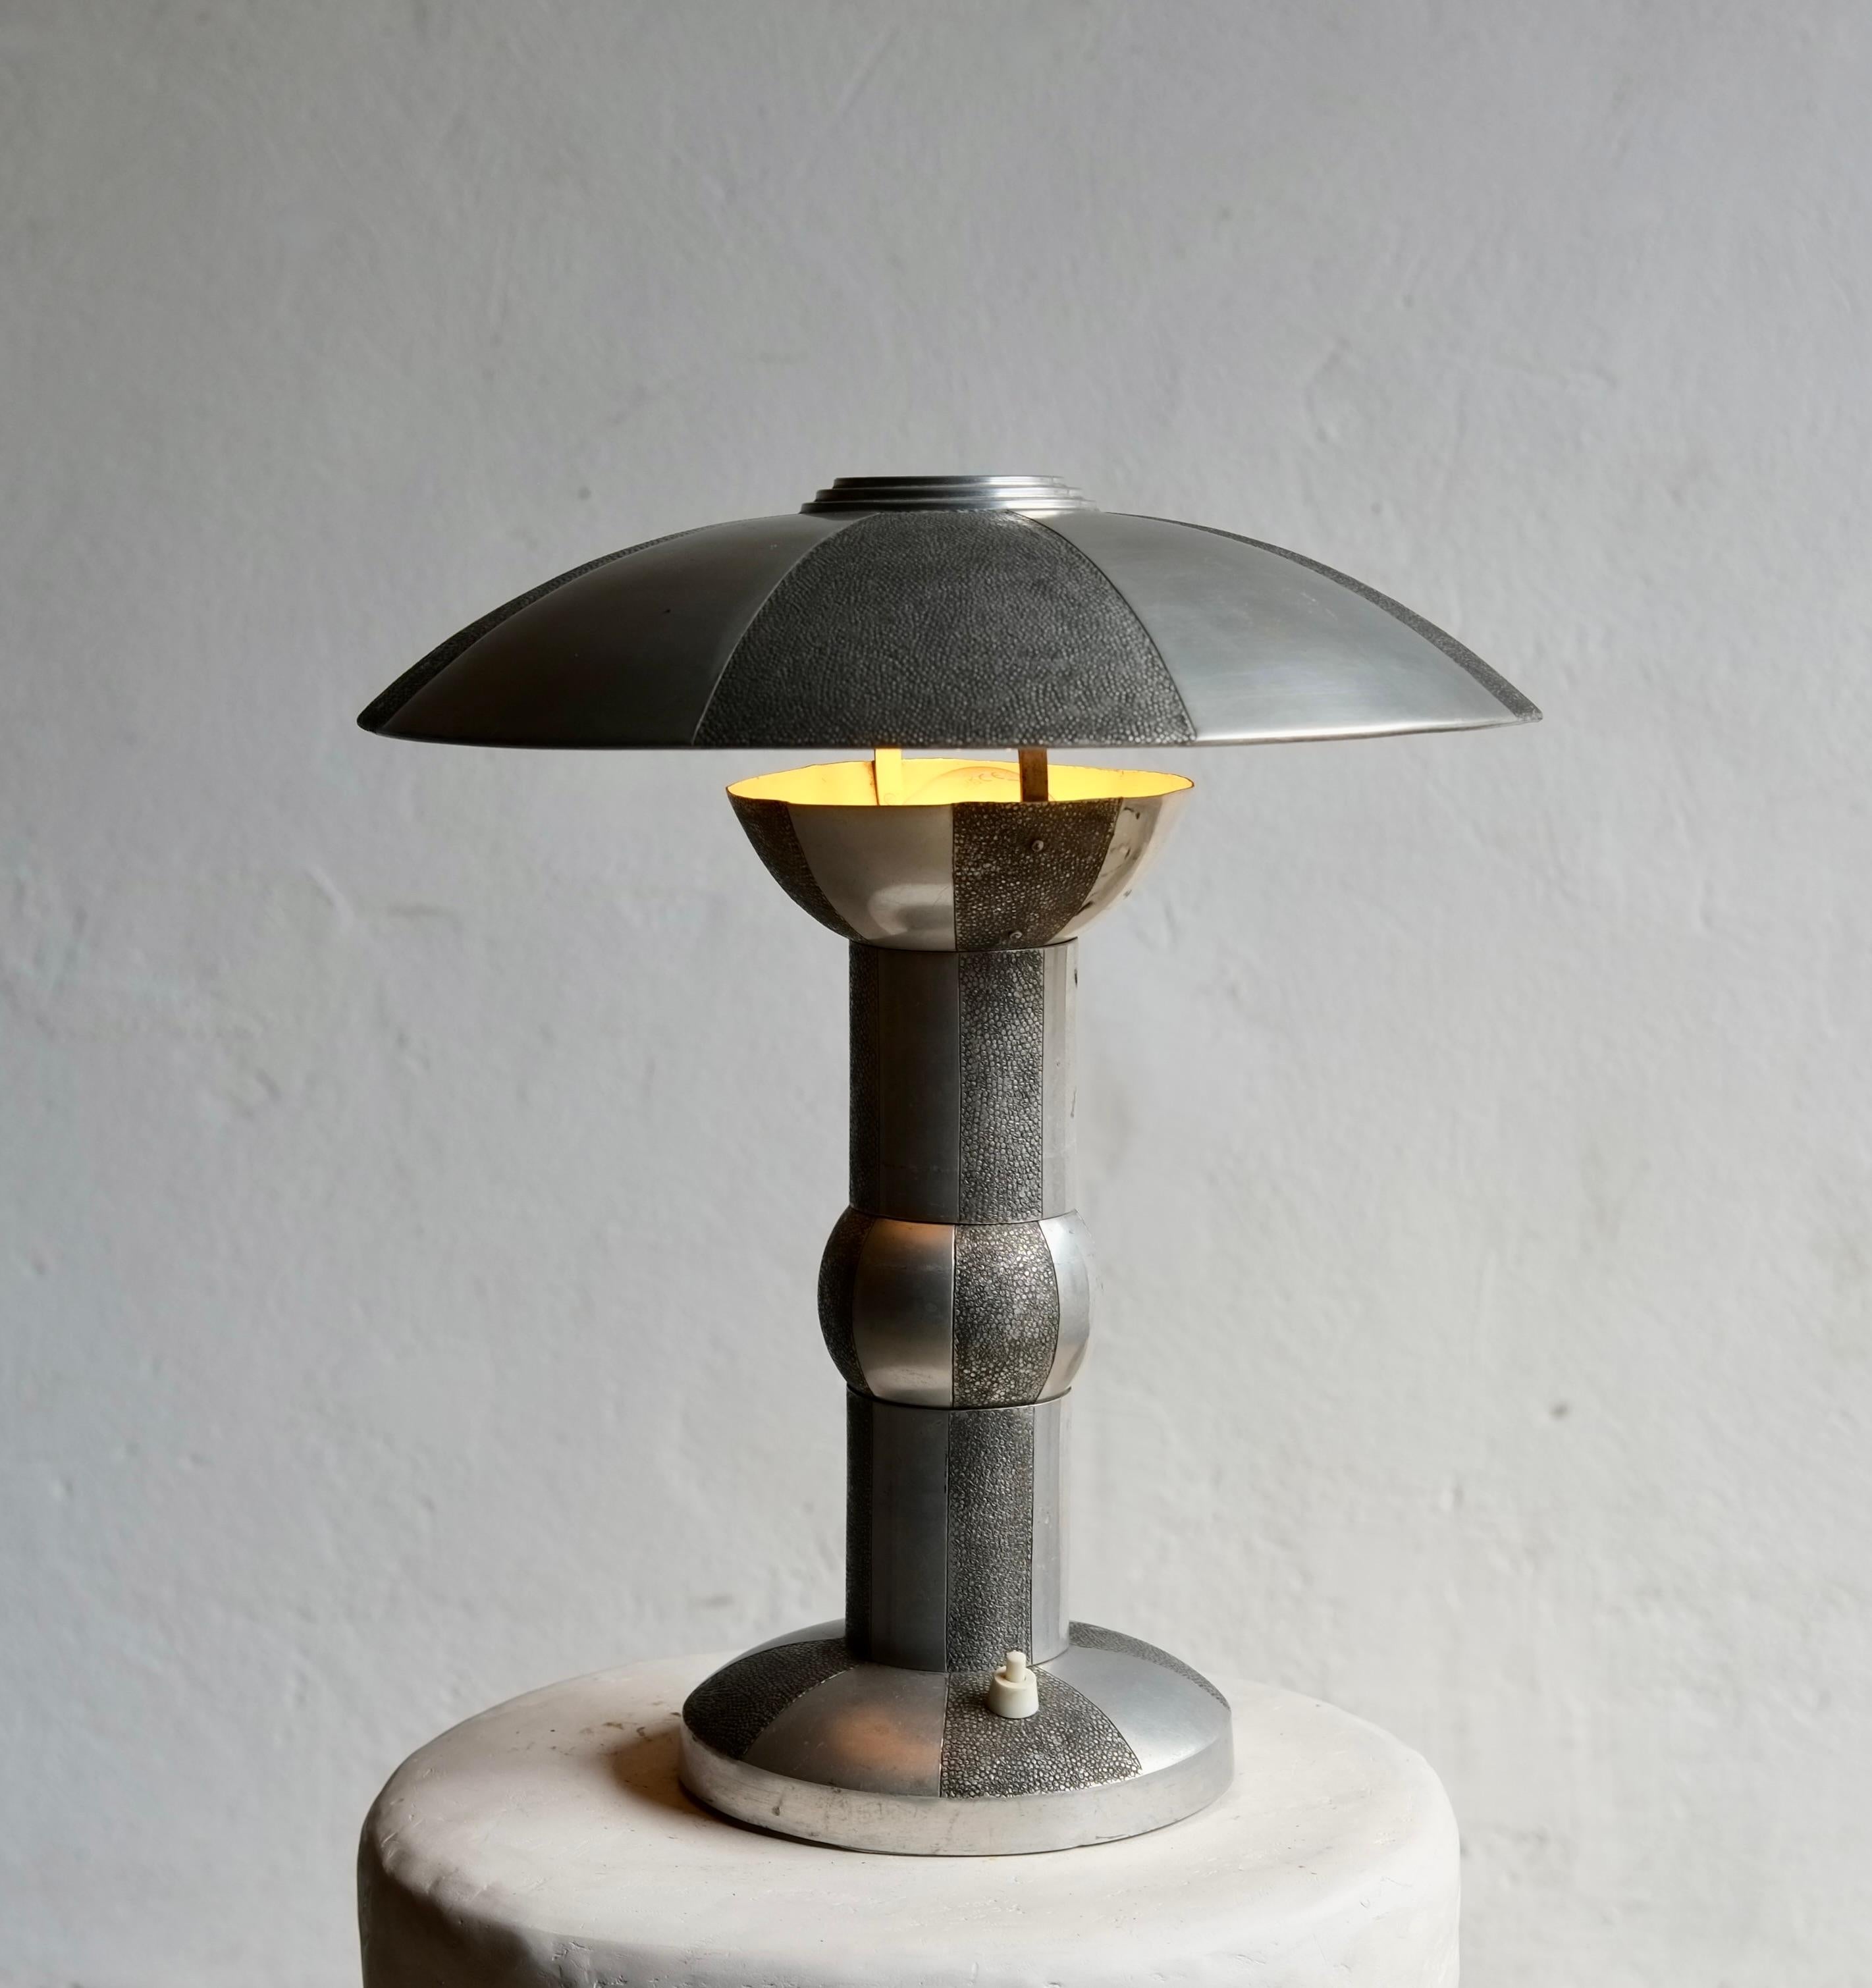 Ein Original  Art-Déco-Metall-Lampe aus den 1930er Jahren mit Shagreen-Effekt. 

Einige Kratzer auf dem Metall. 